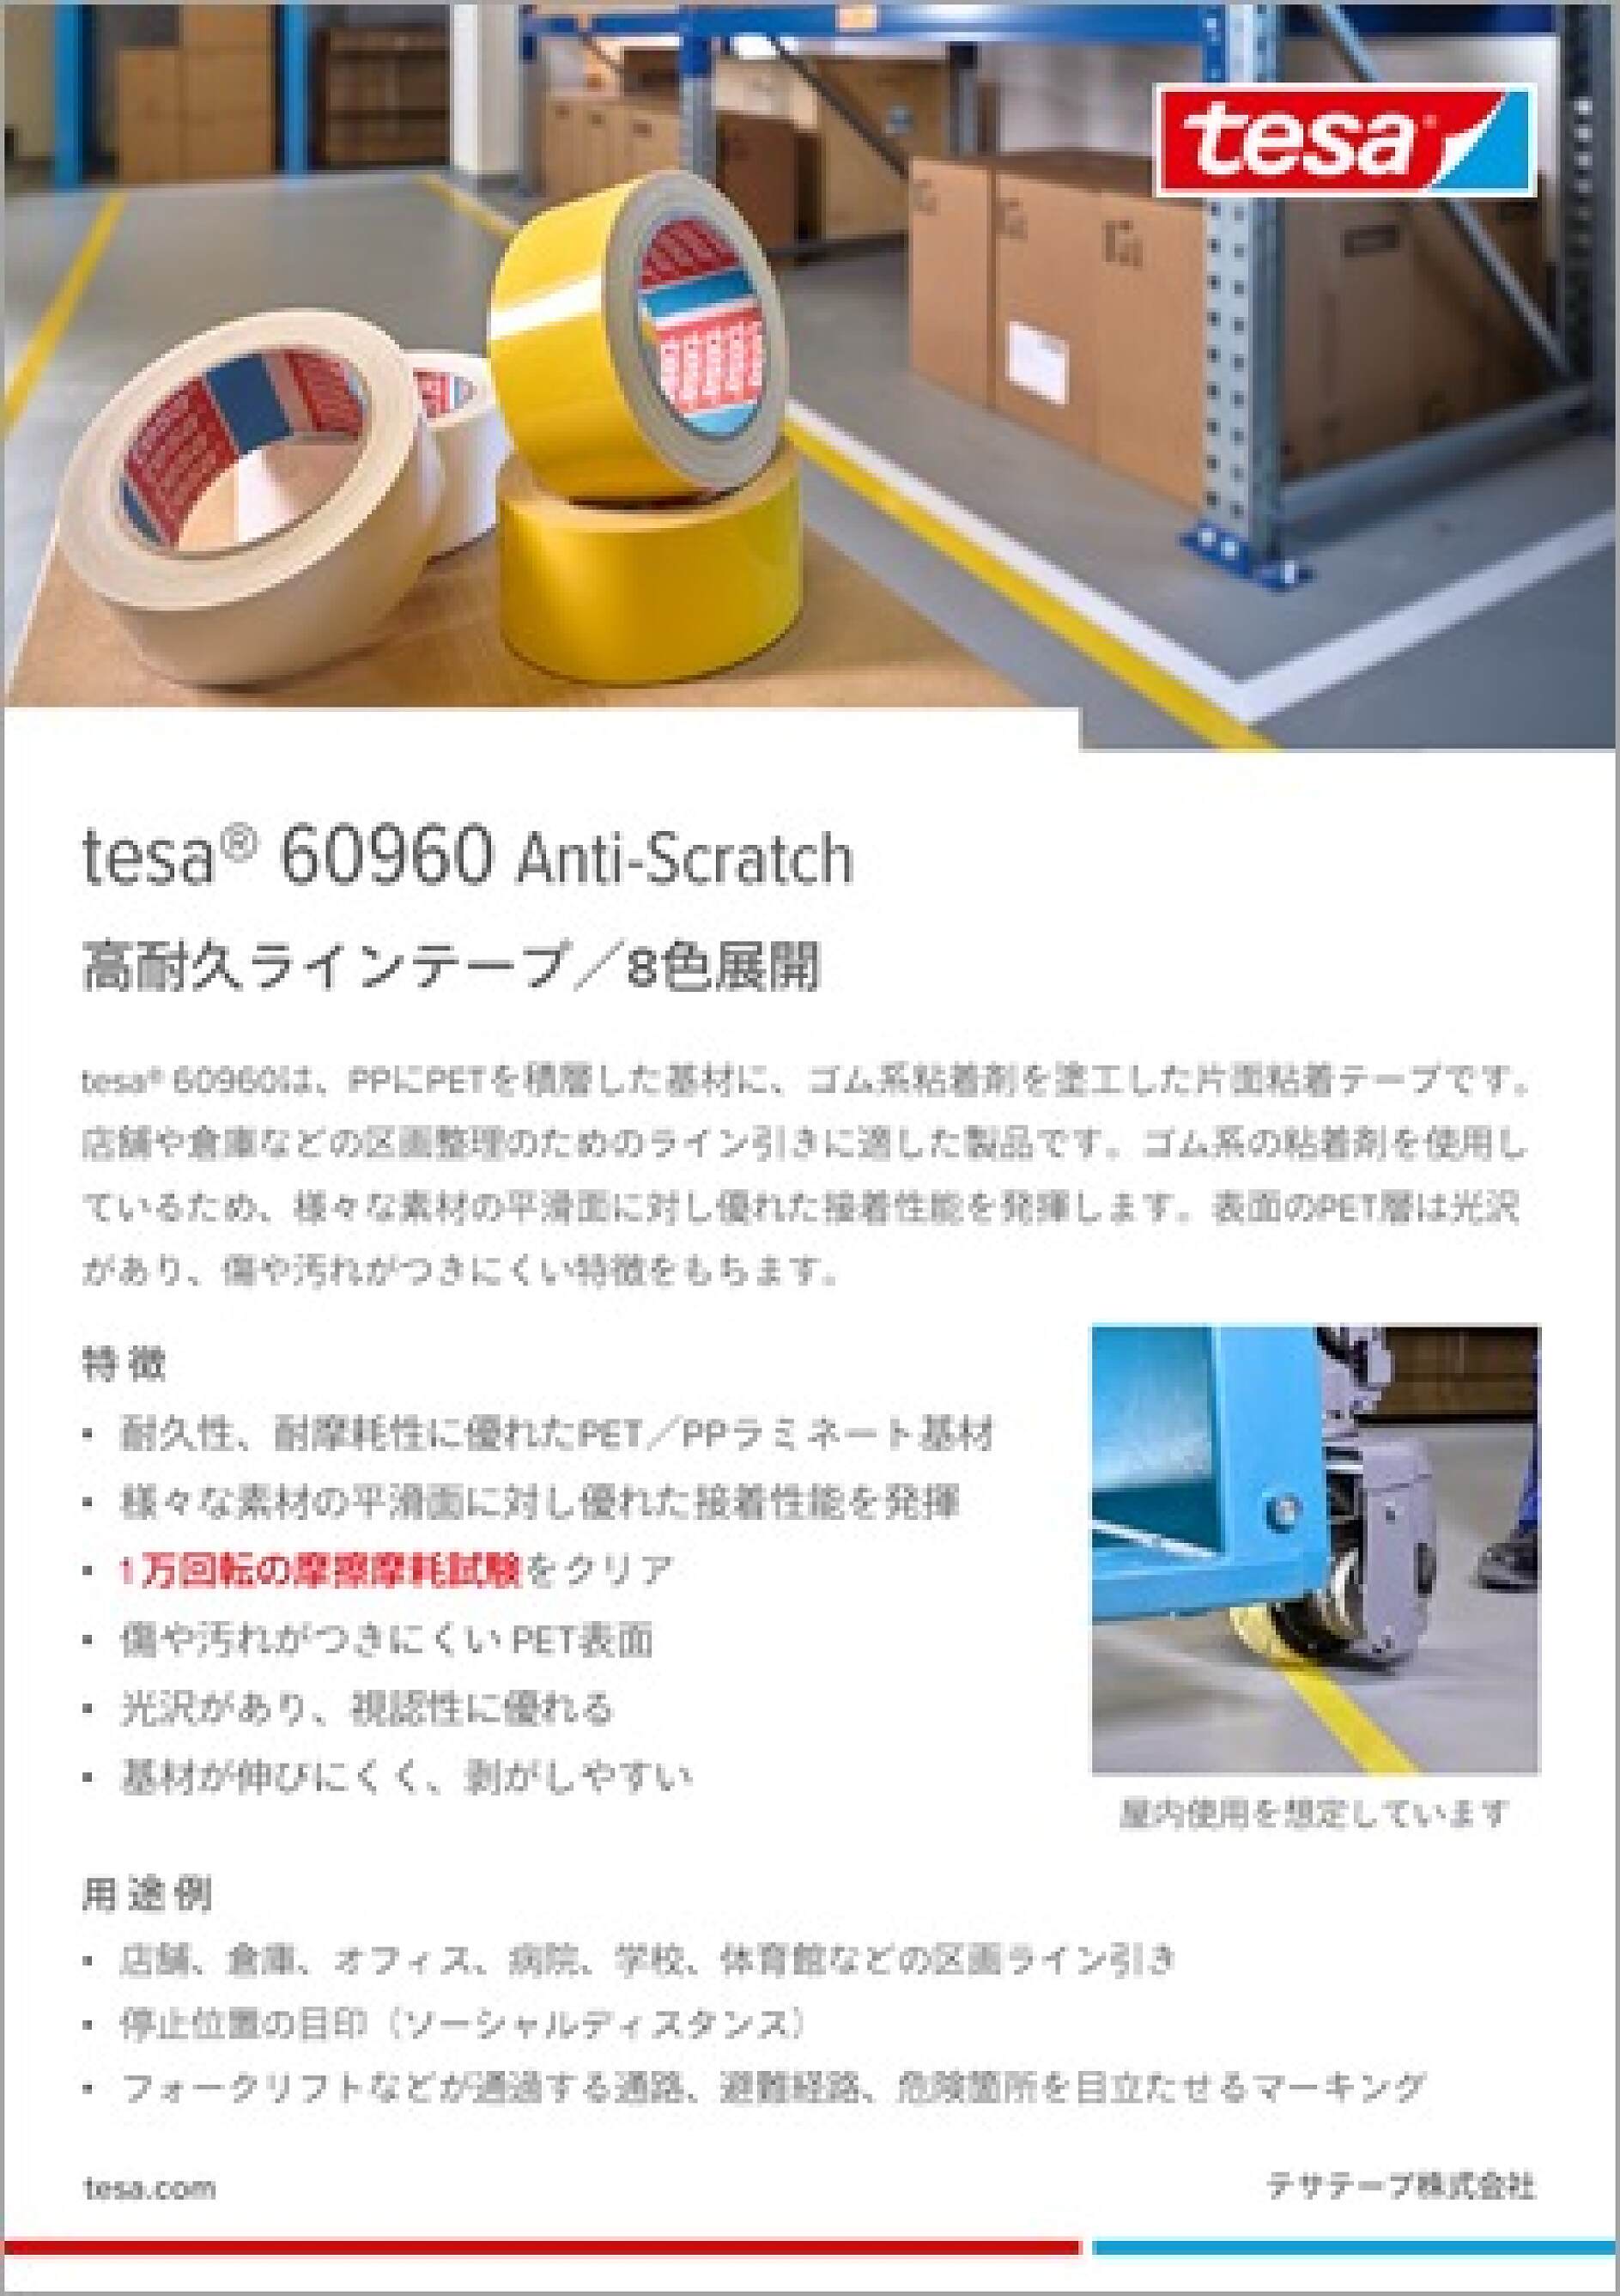 高耐久ラインテープ tesa® 60960 Anti-Scratch - tesa